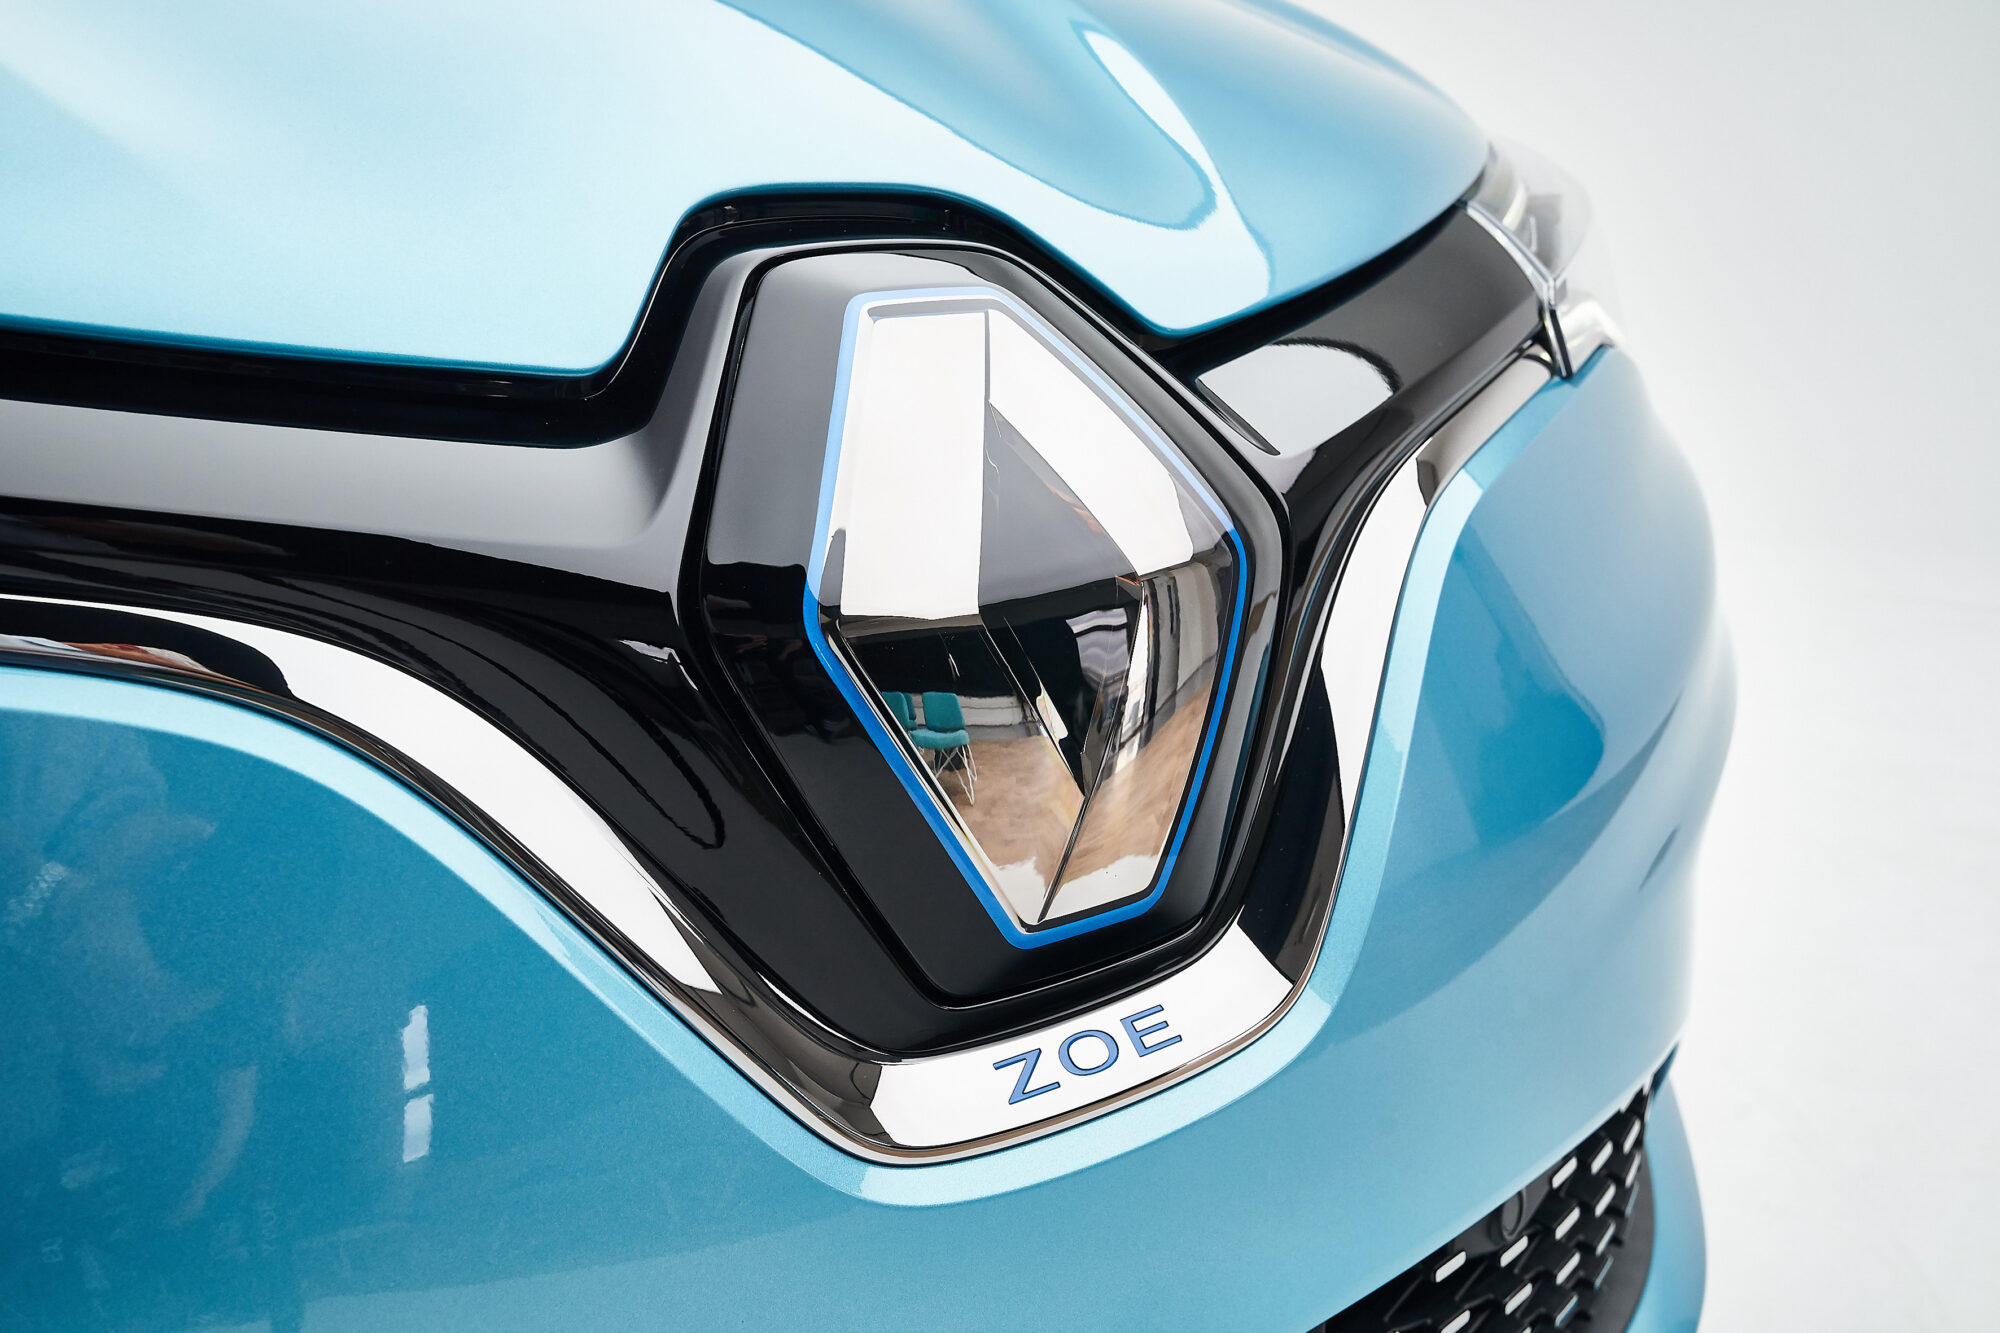 Nuova ZOE - Il piacere della guida 100 % elettrica assume una nuova dimensione